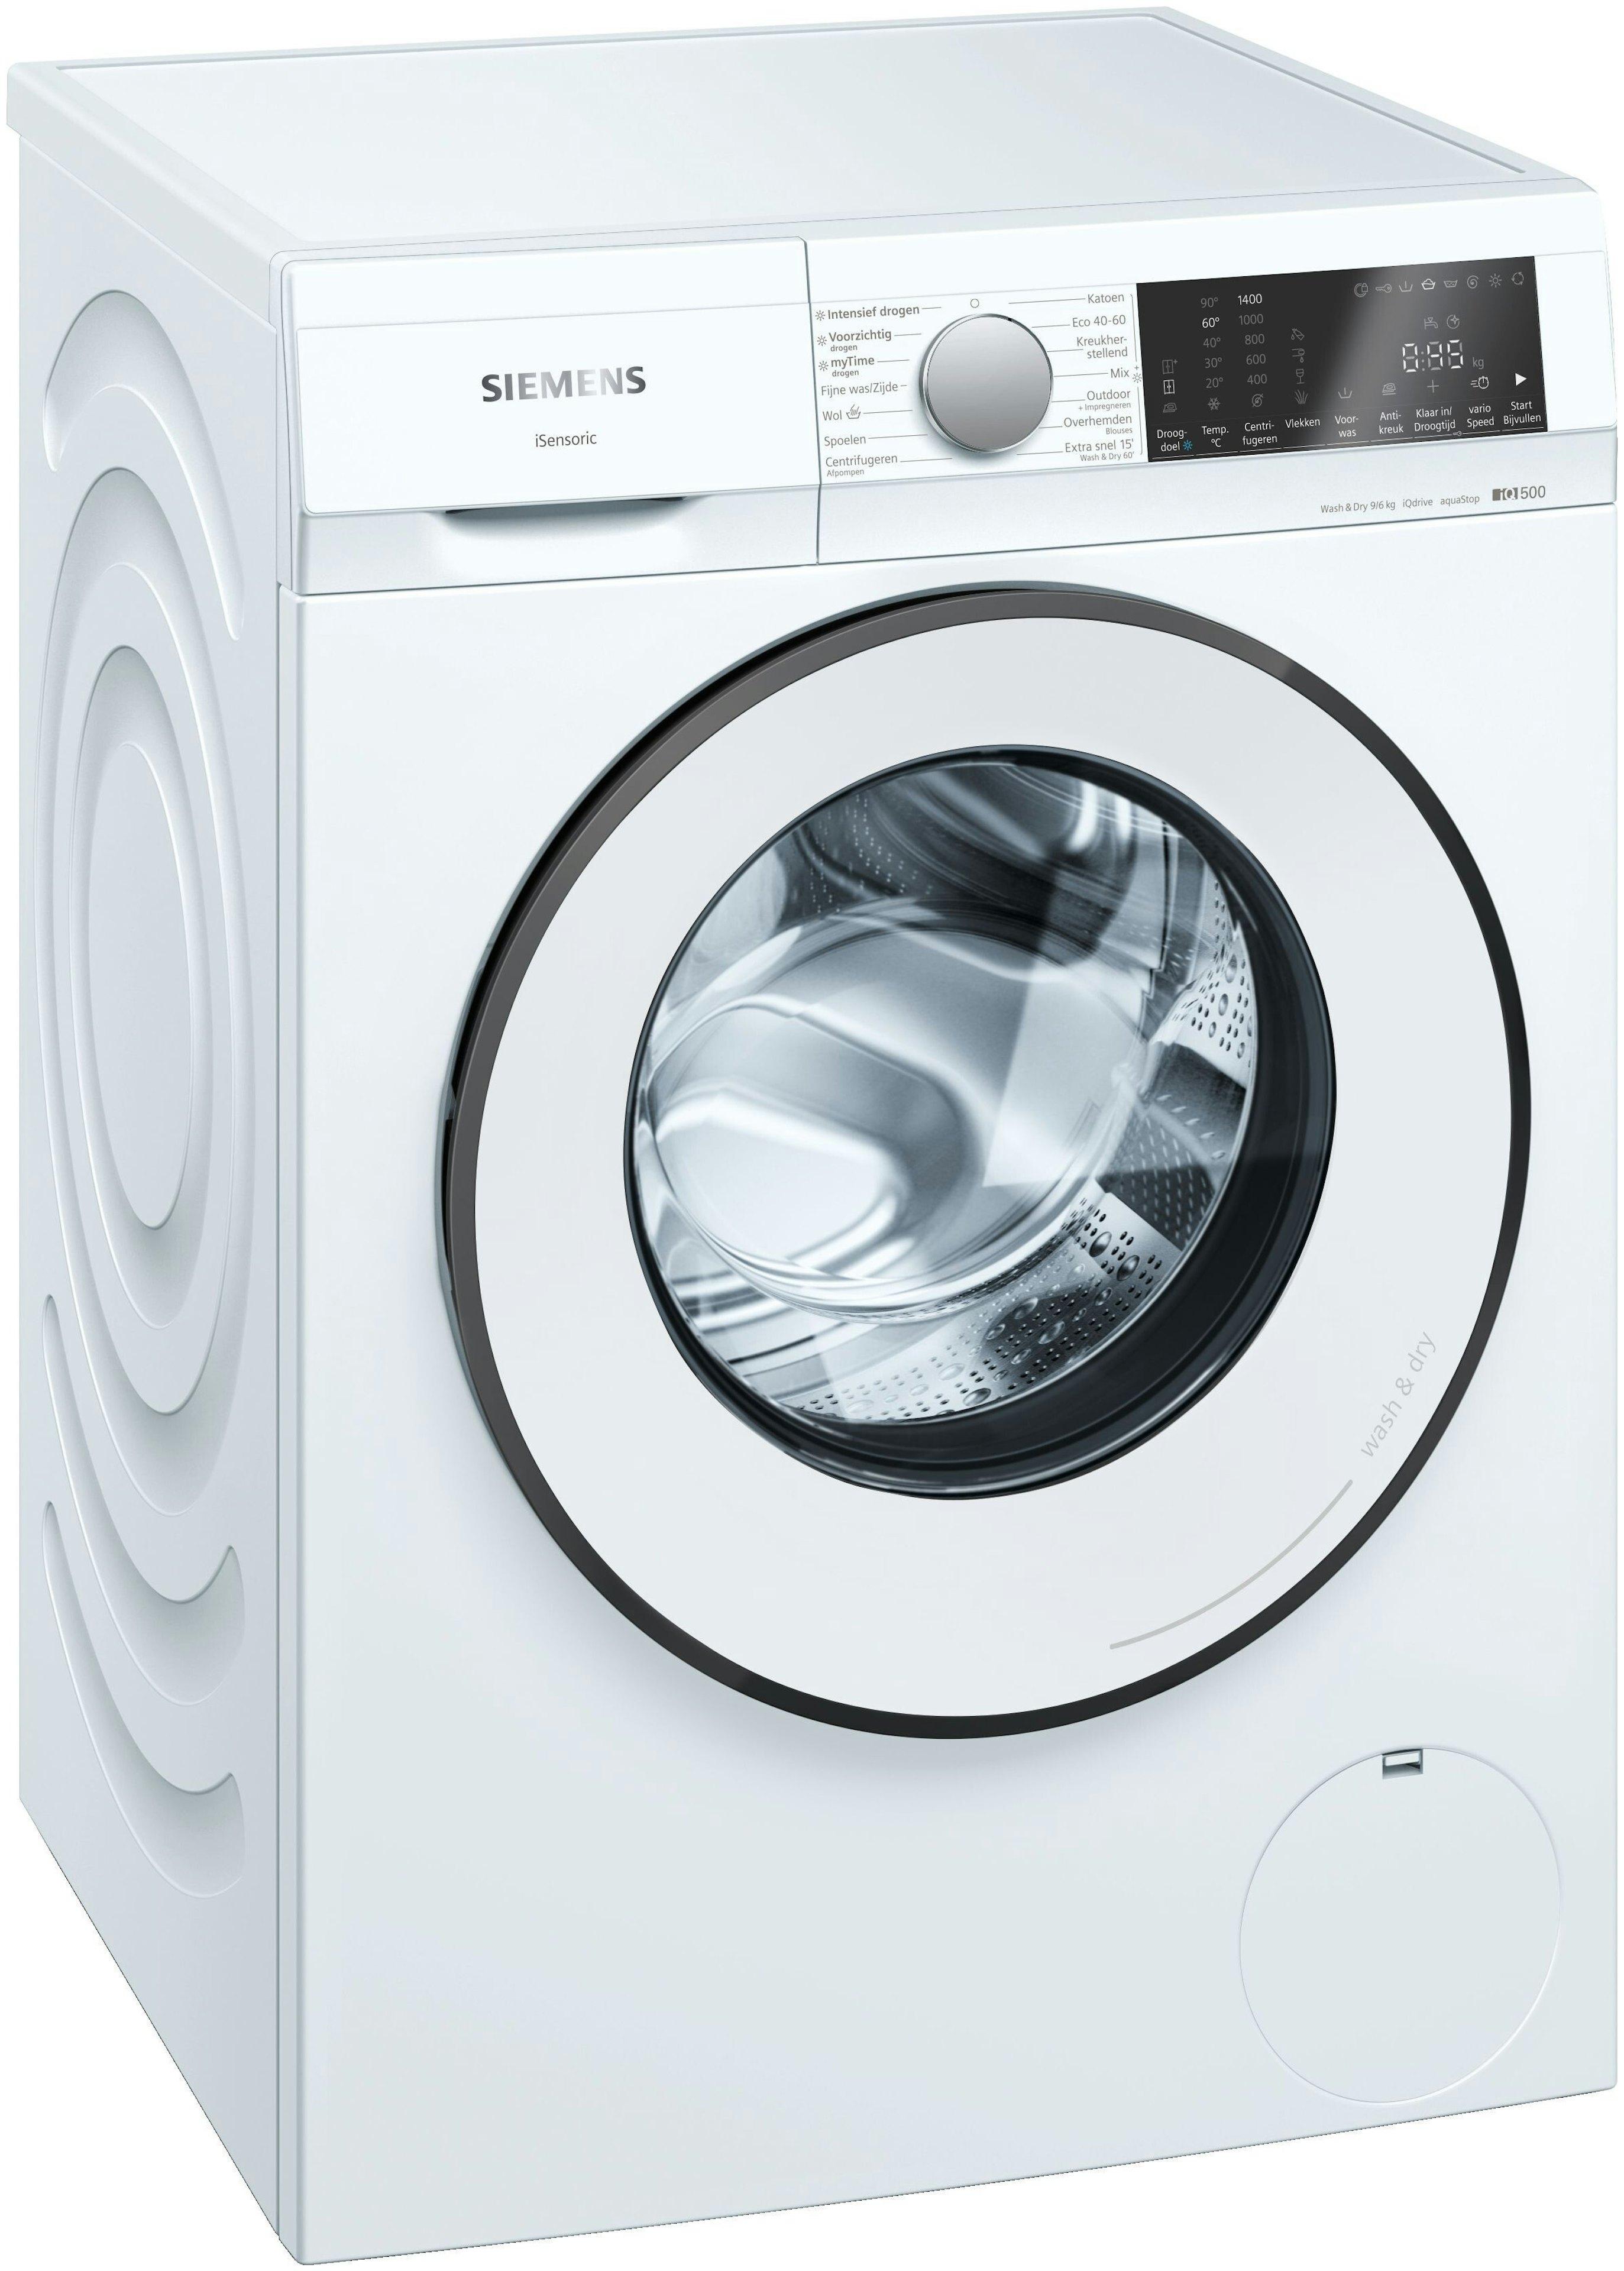 evenwicht Voorlopige eindeloos Siemens wasmachine 9 kg vulgewicht kopen? - Bemmel & Kroon!